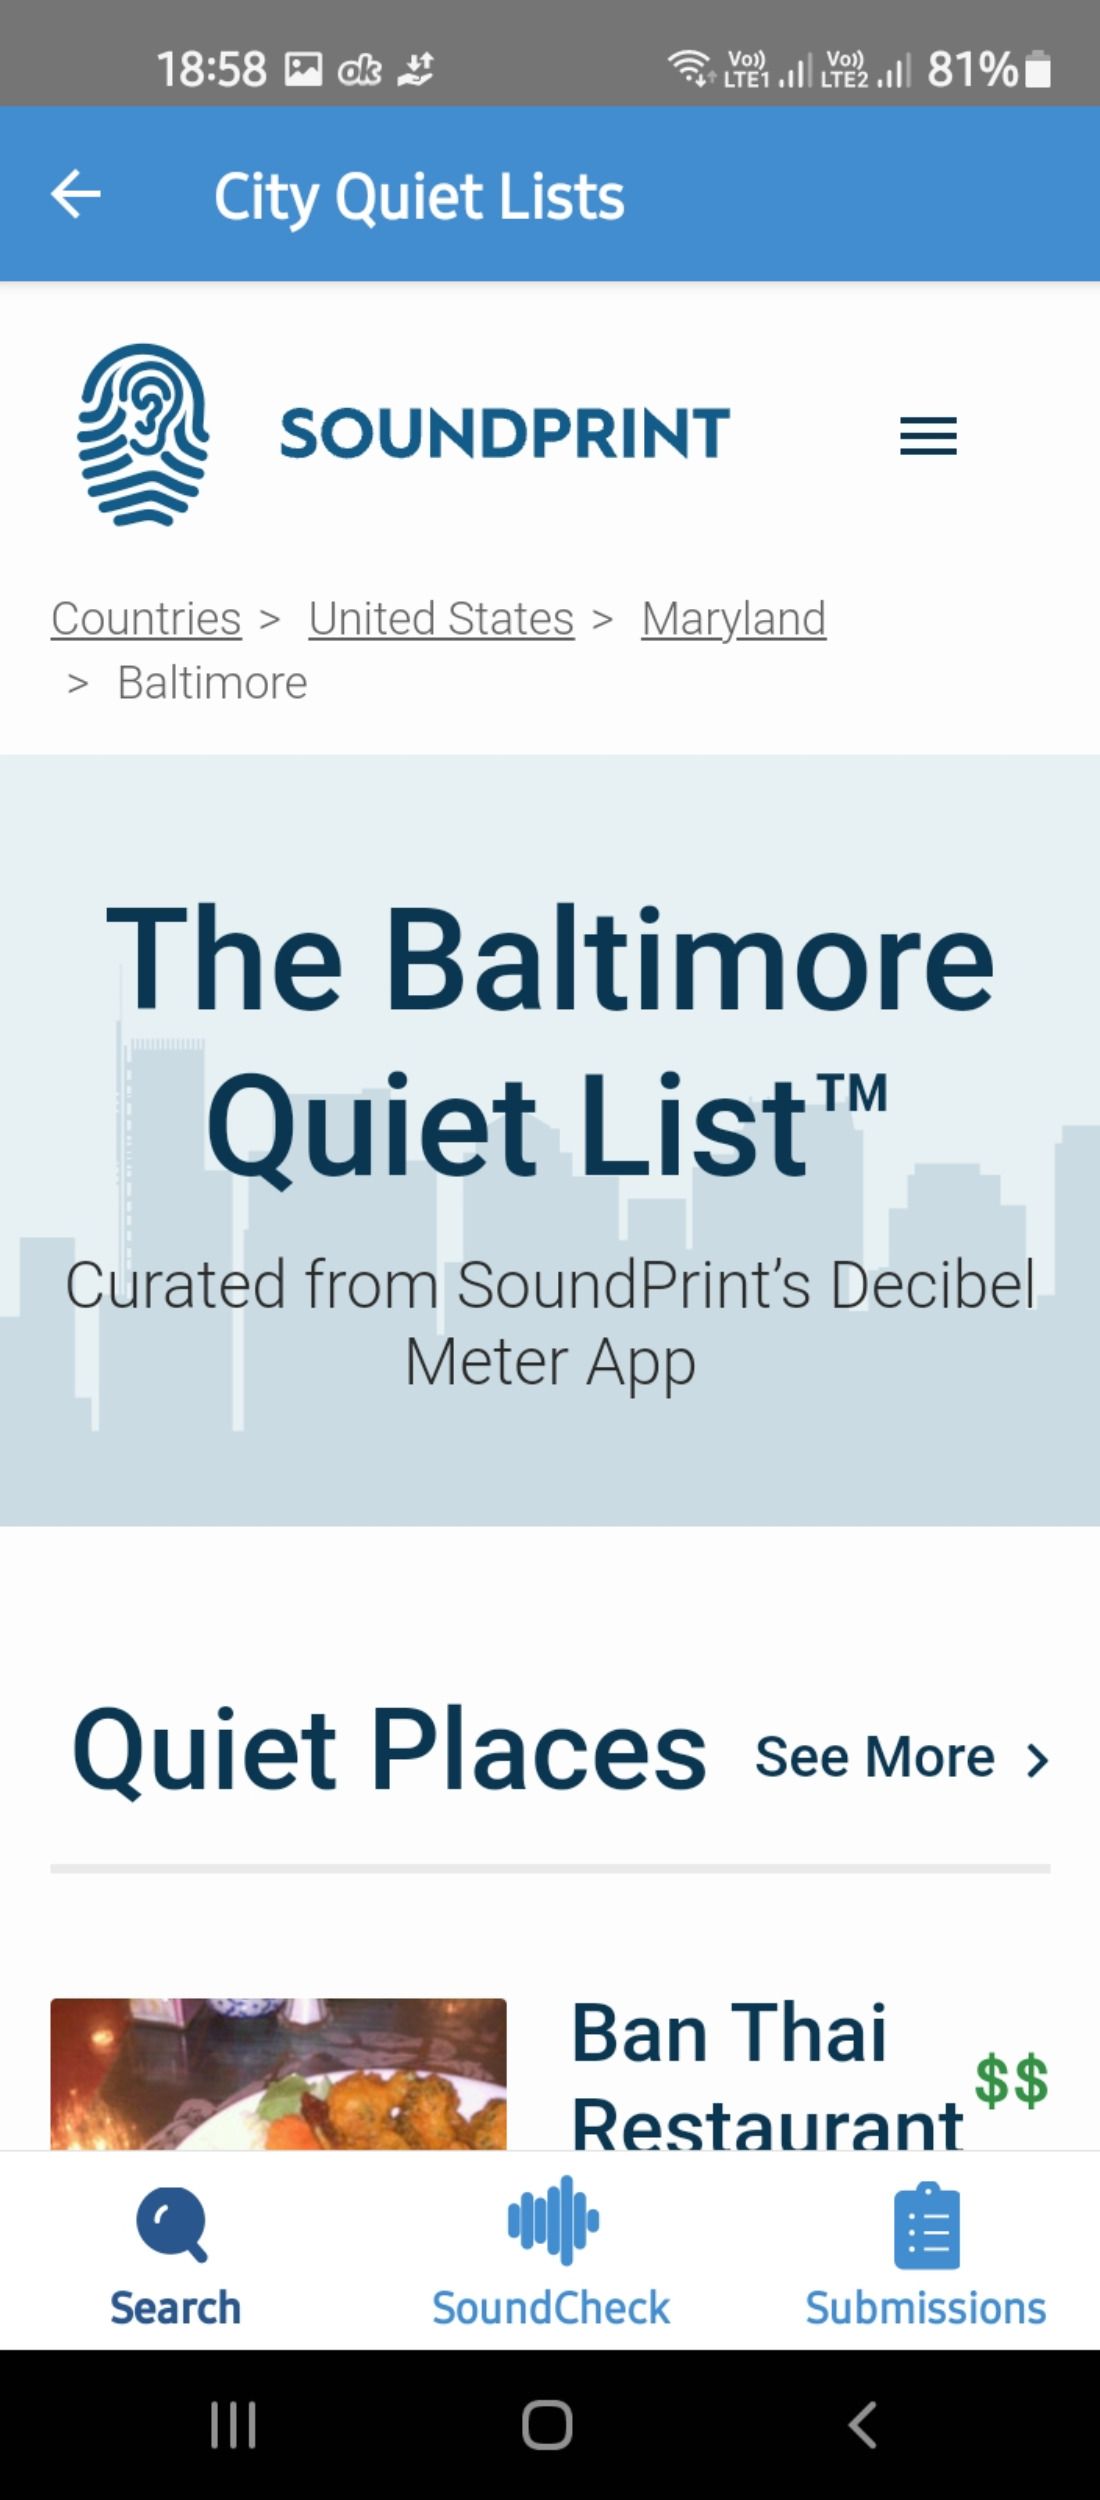 List of quiet restaurants in Baltimore in the SoundPrint app